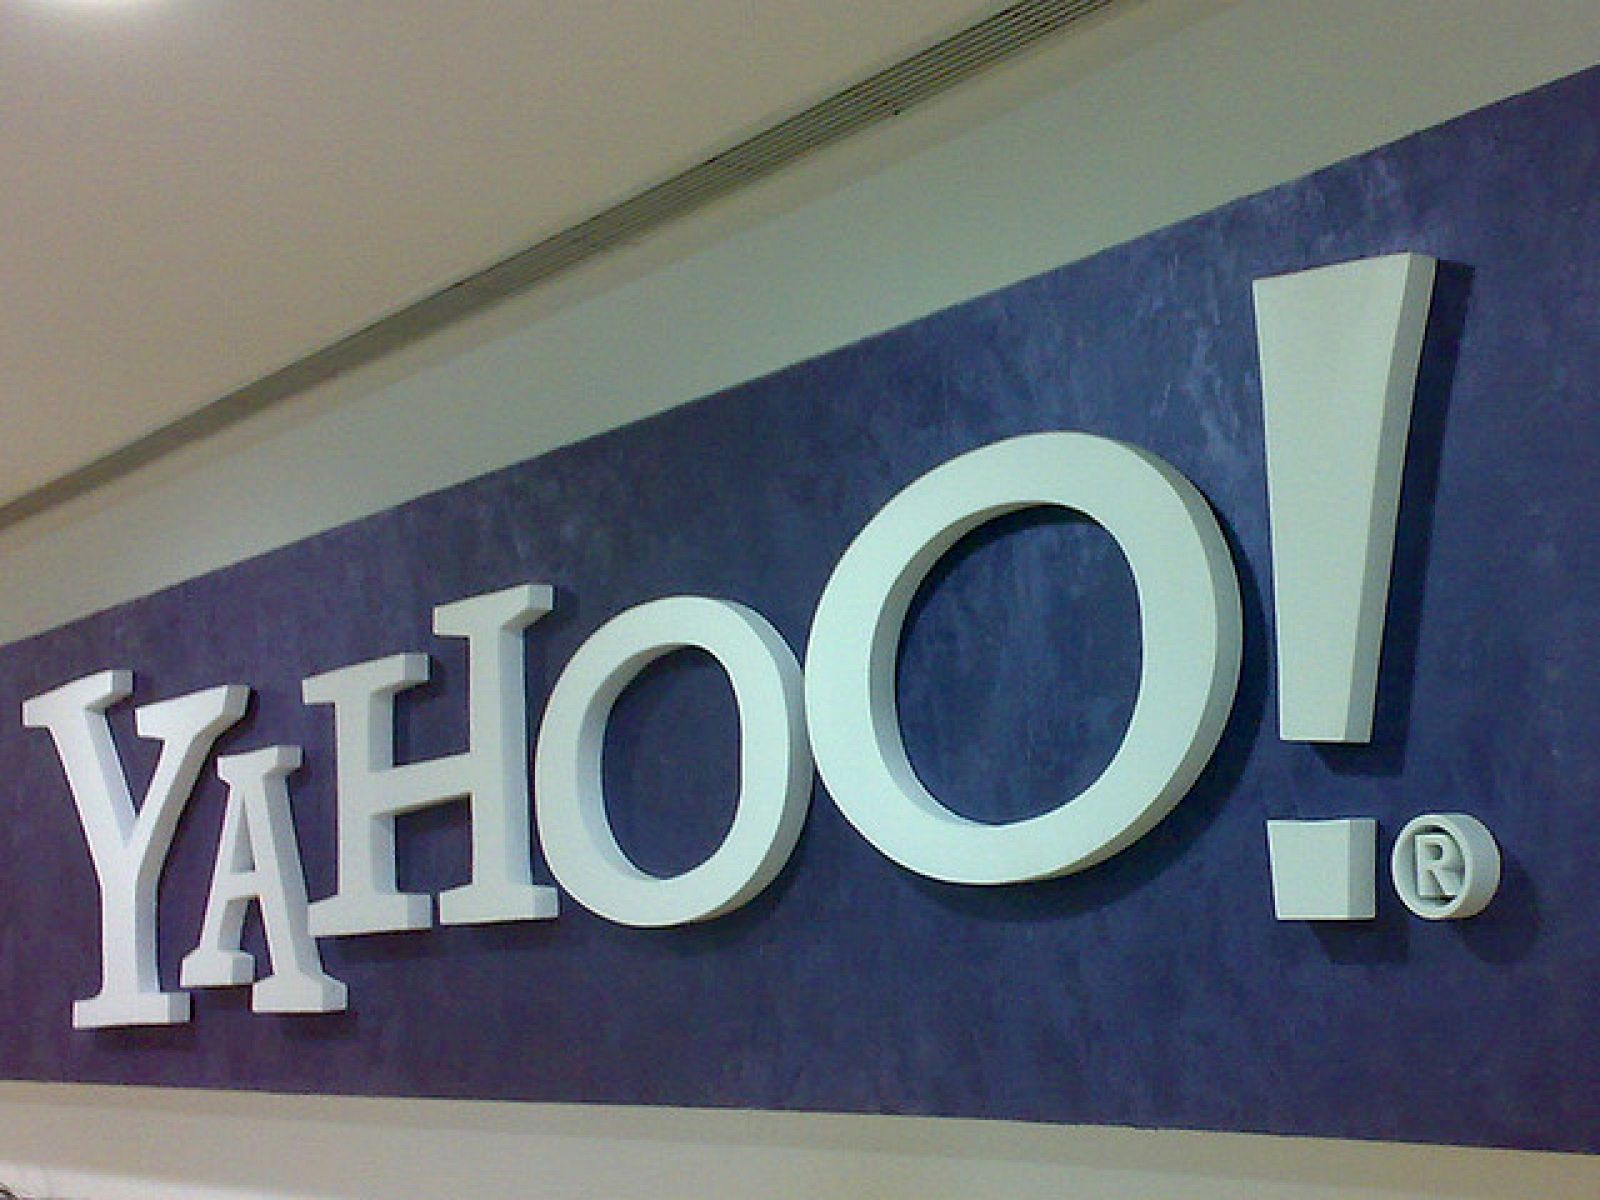 Los datos se han publicado como una "llamada de atención" a los agujeros de seguridad de Yahoo